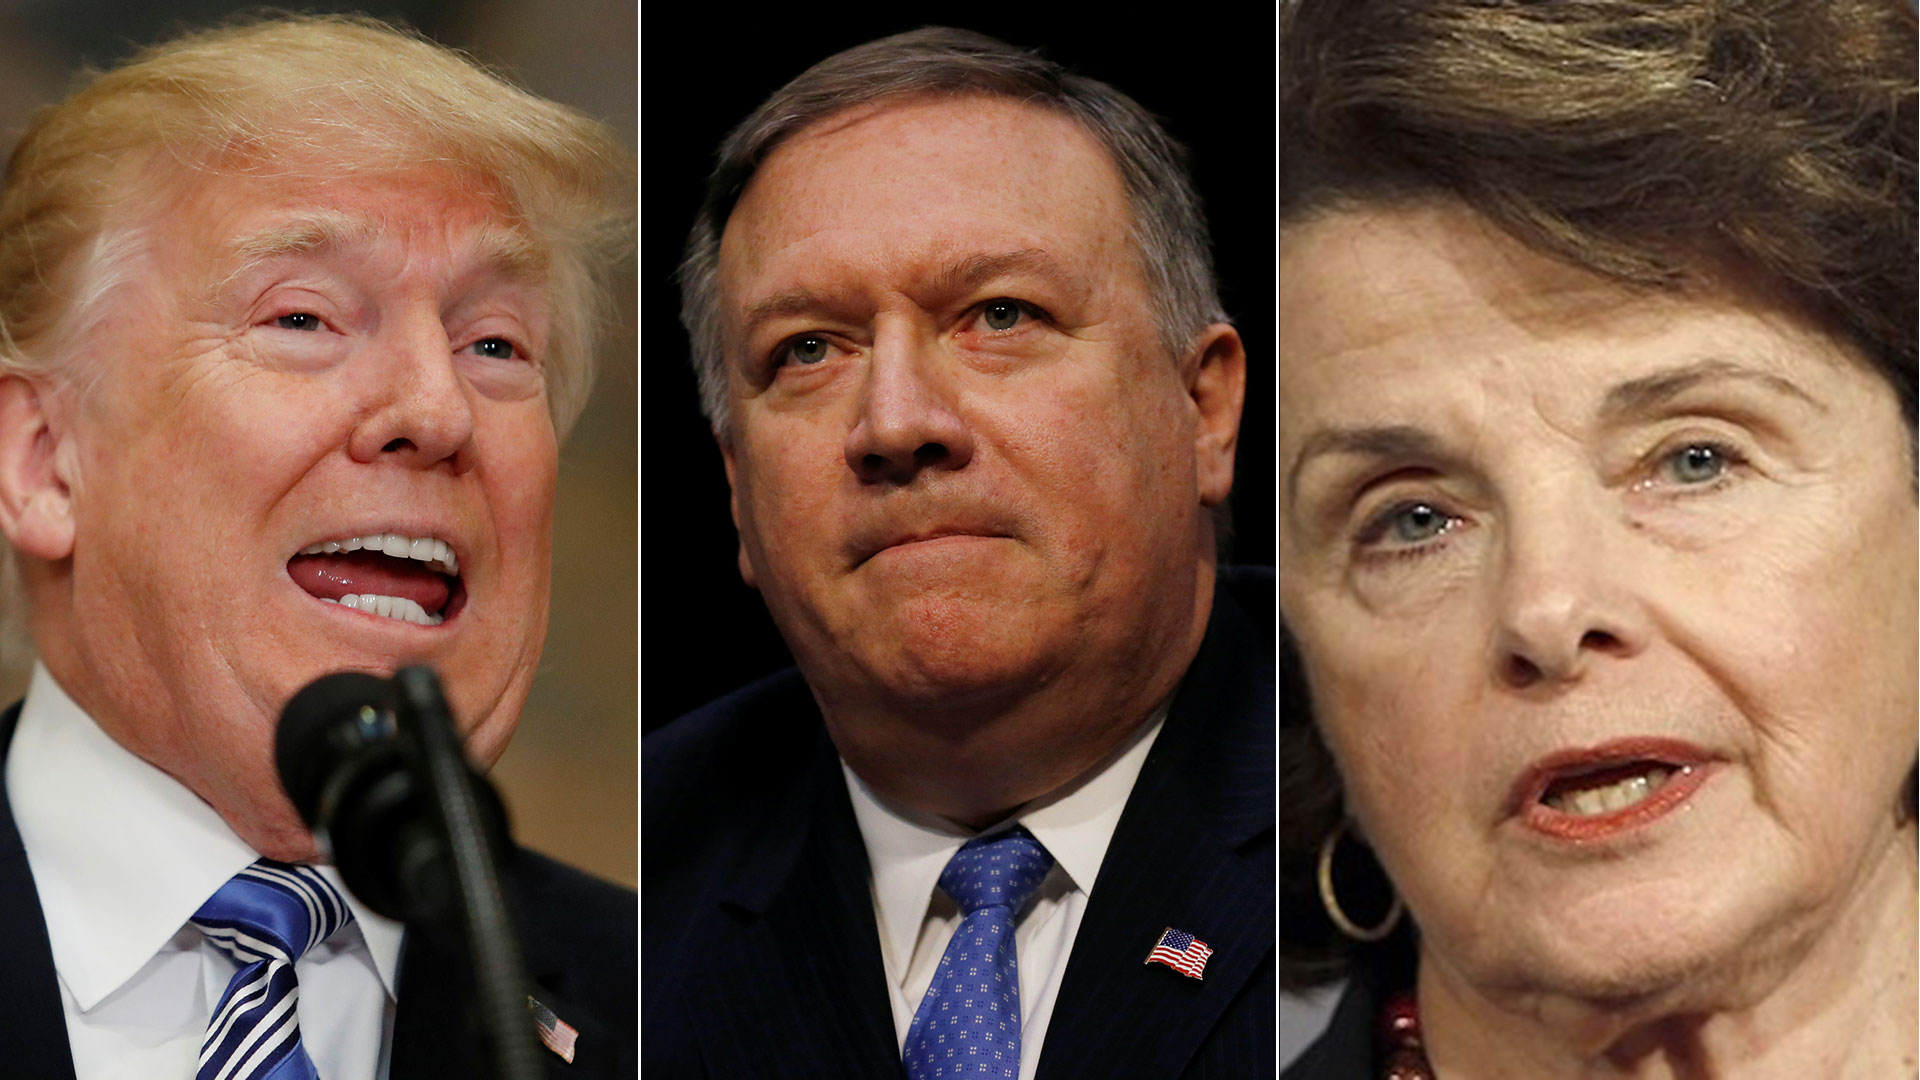 EEUU: Mike Pompeo reemplaza a Tillerson como secretario de Estado y la CIA será dirigida por primera vez por una mujer